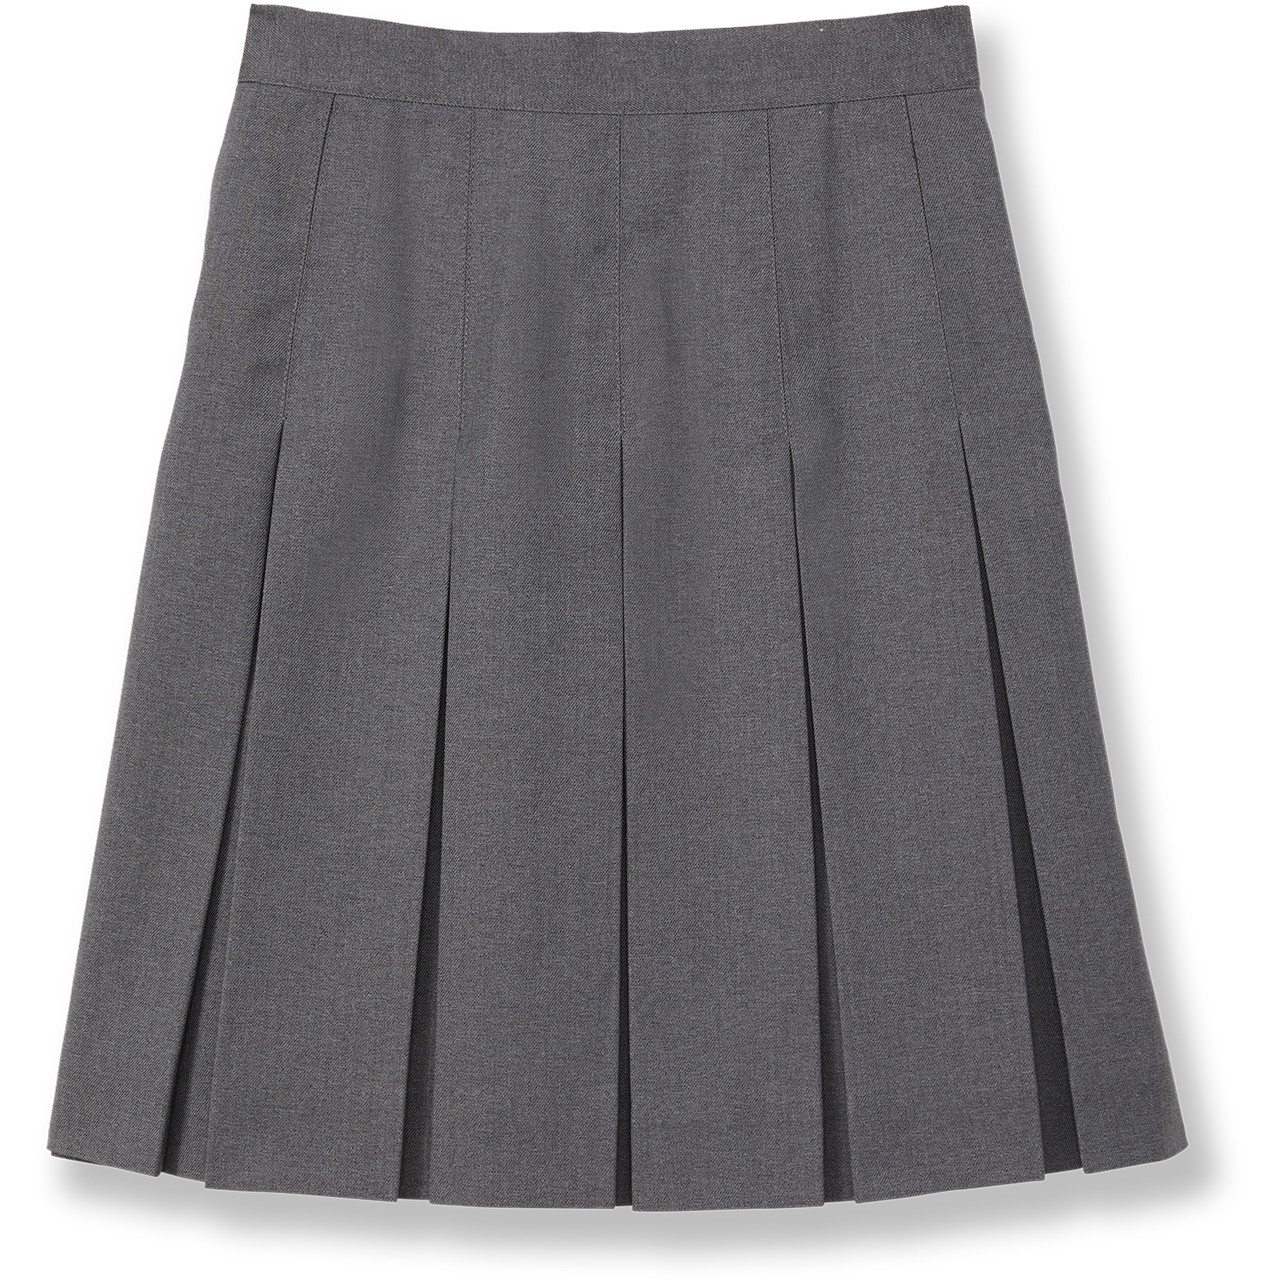 Box Pleat Skirt [NY641-505E-99-CHARCOAL] - FlynnO'Hara Uniforms